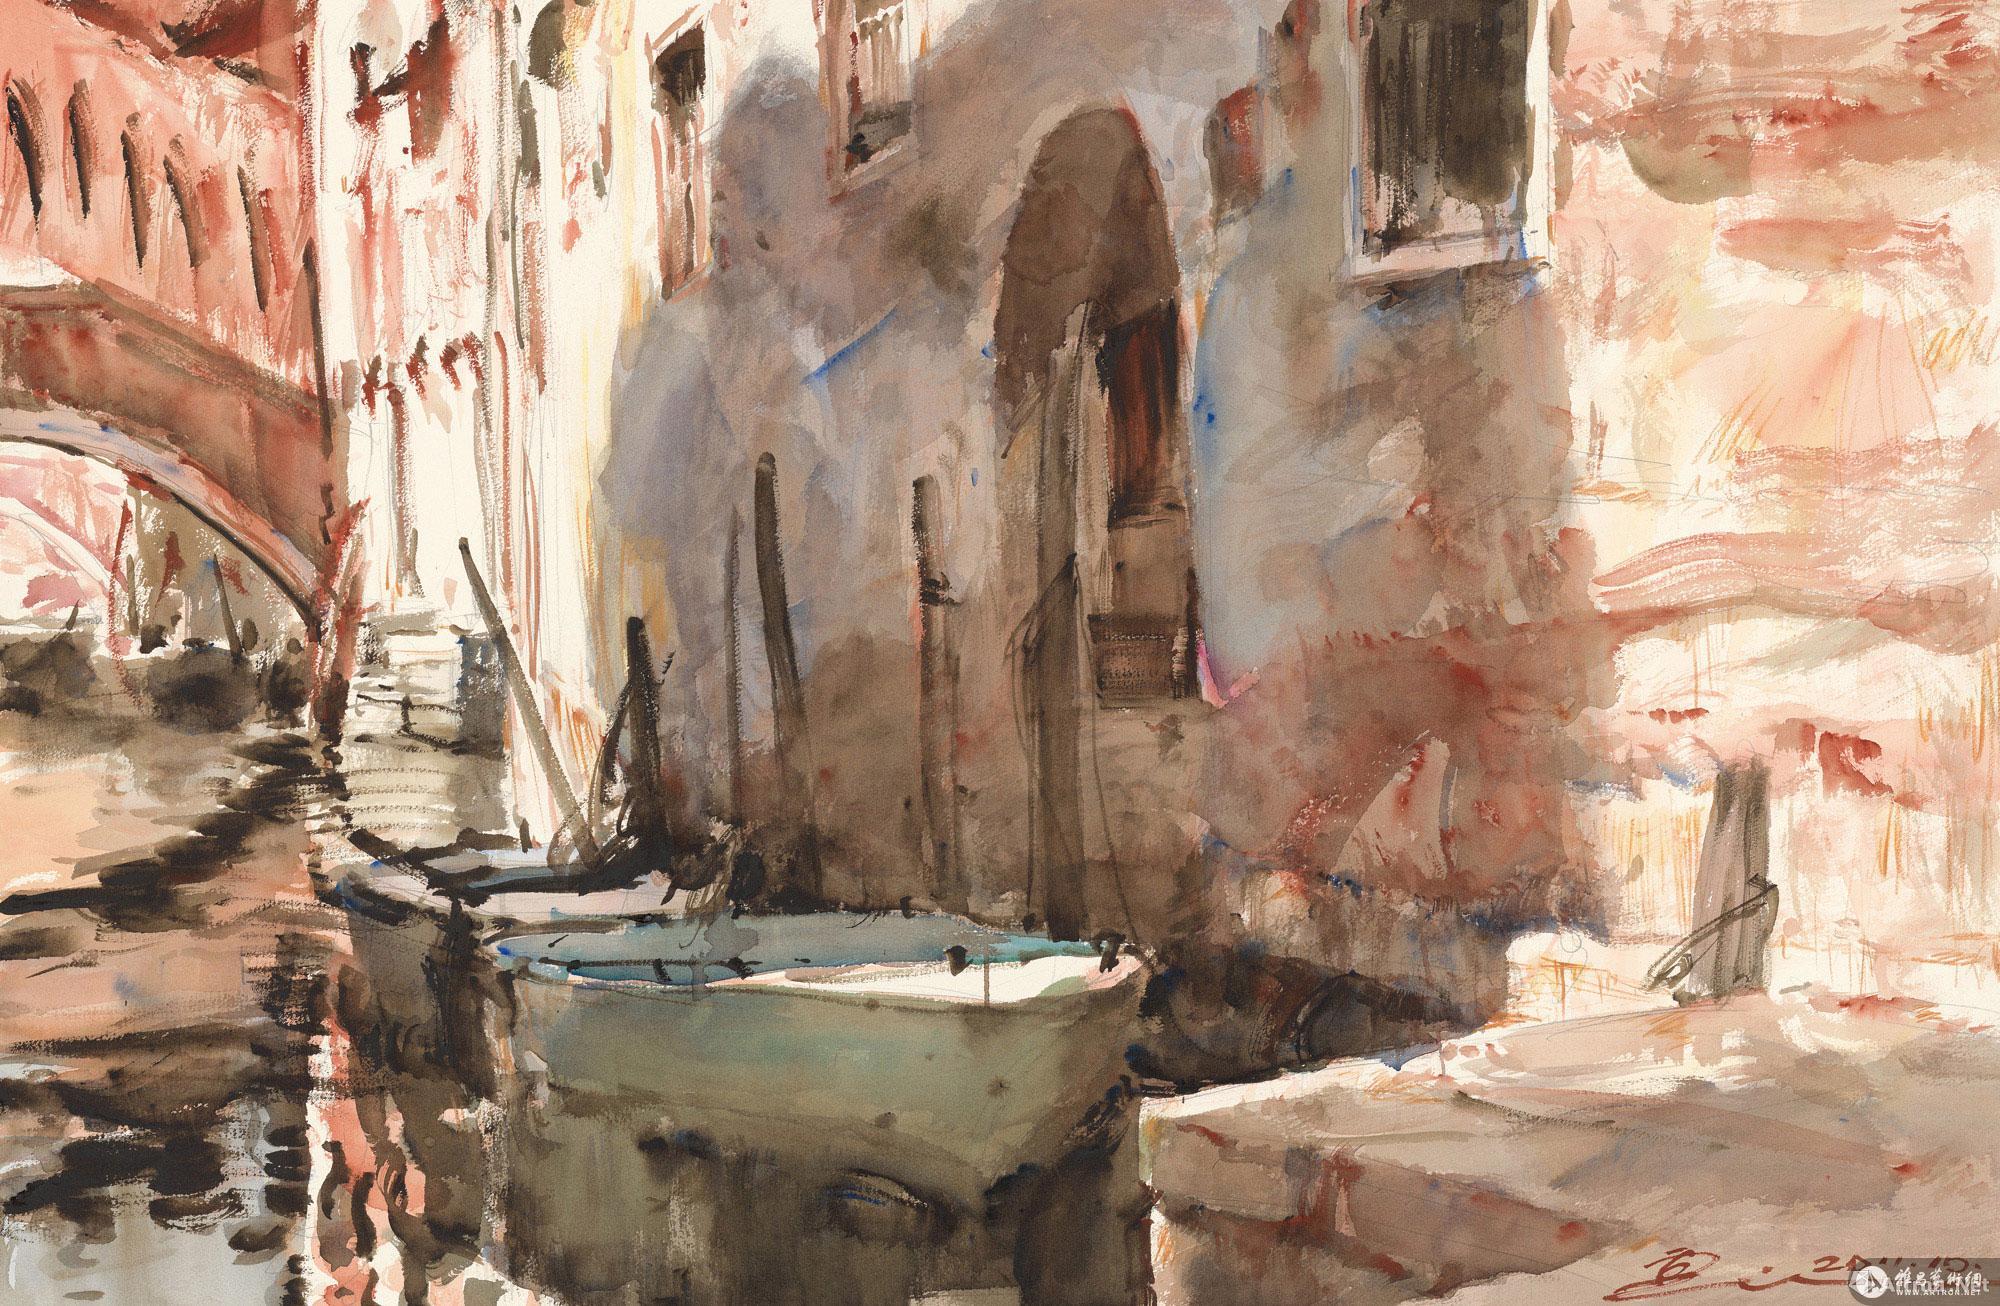 威尼斯印象No.16 No.16 of the Impressions of Venice